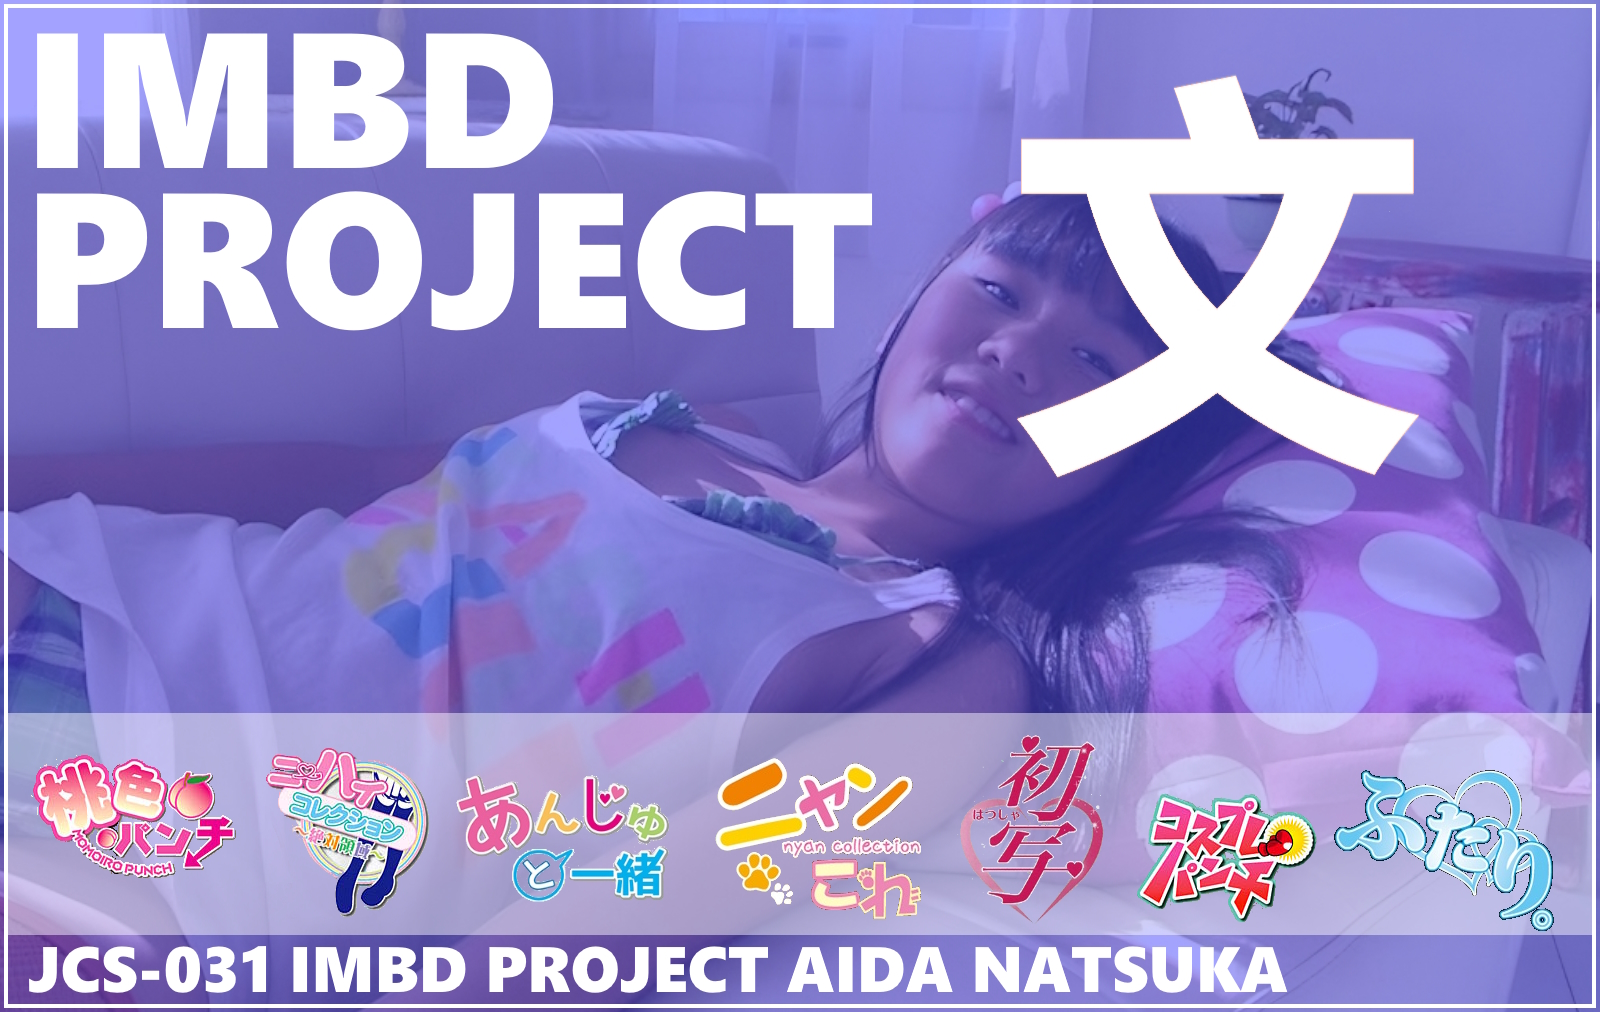 JCS-031 IMBD Project Aida Natsuka